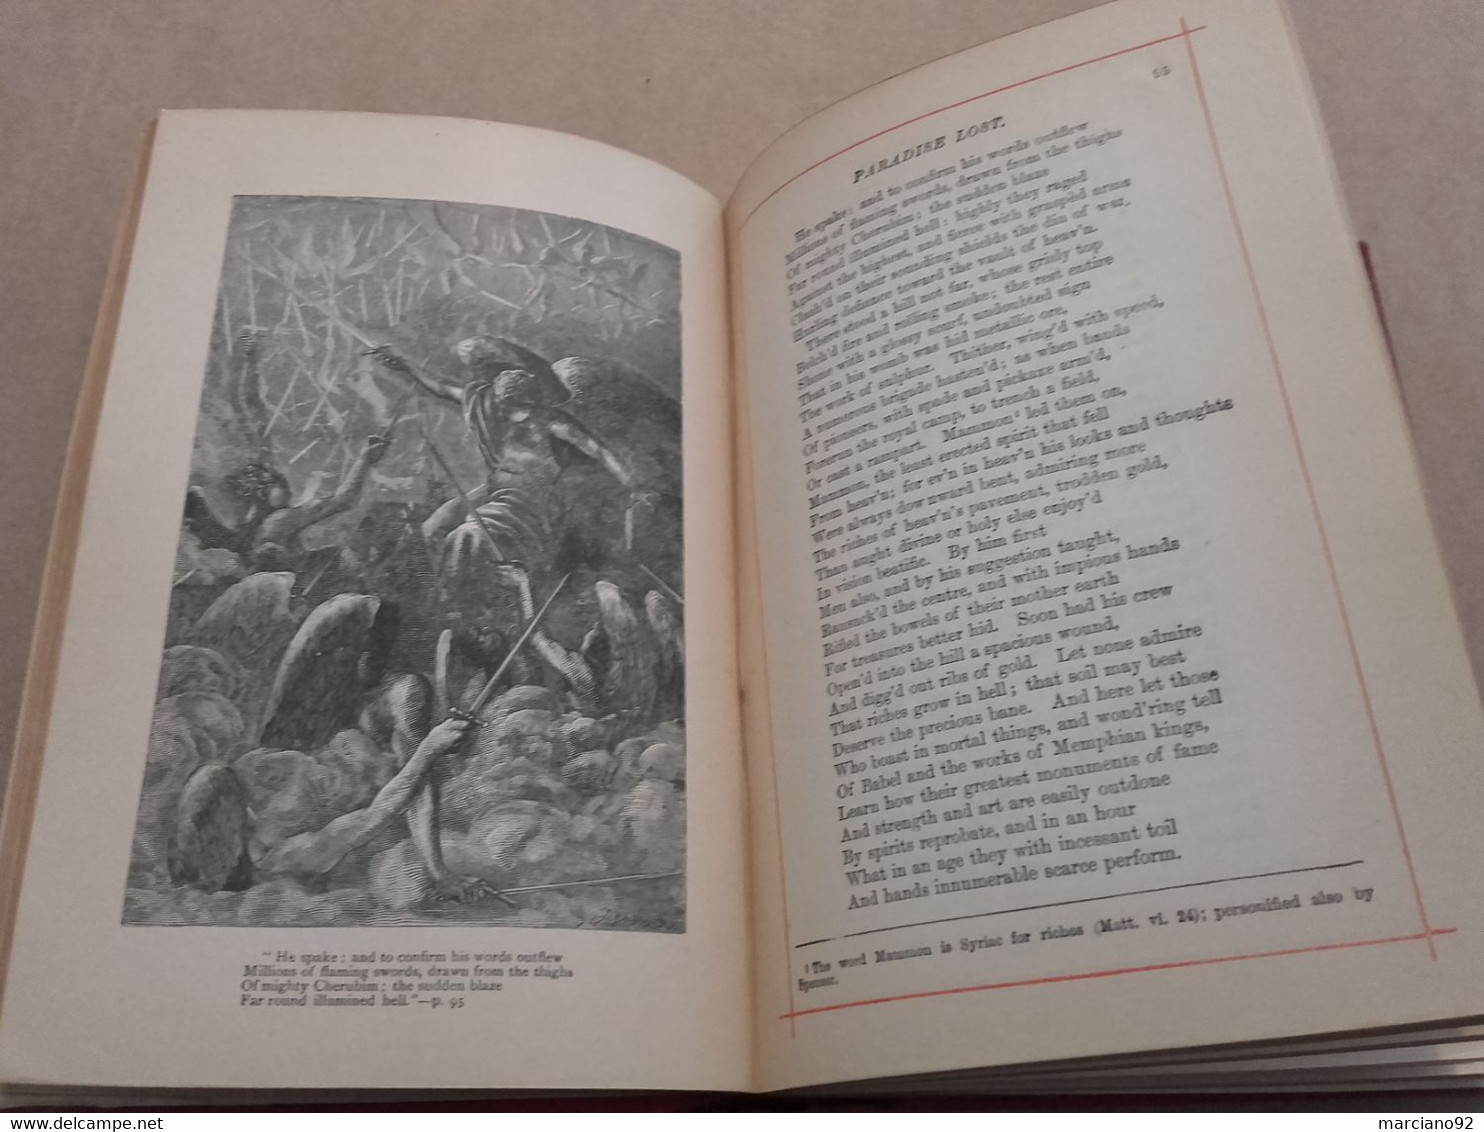 ancien livre the Poetical Works of John Milton ( 19 ème siècle )